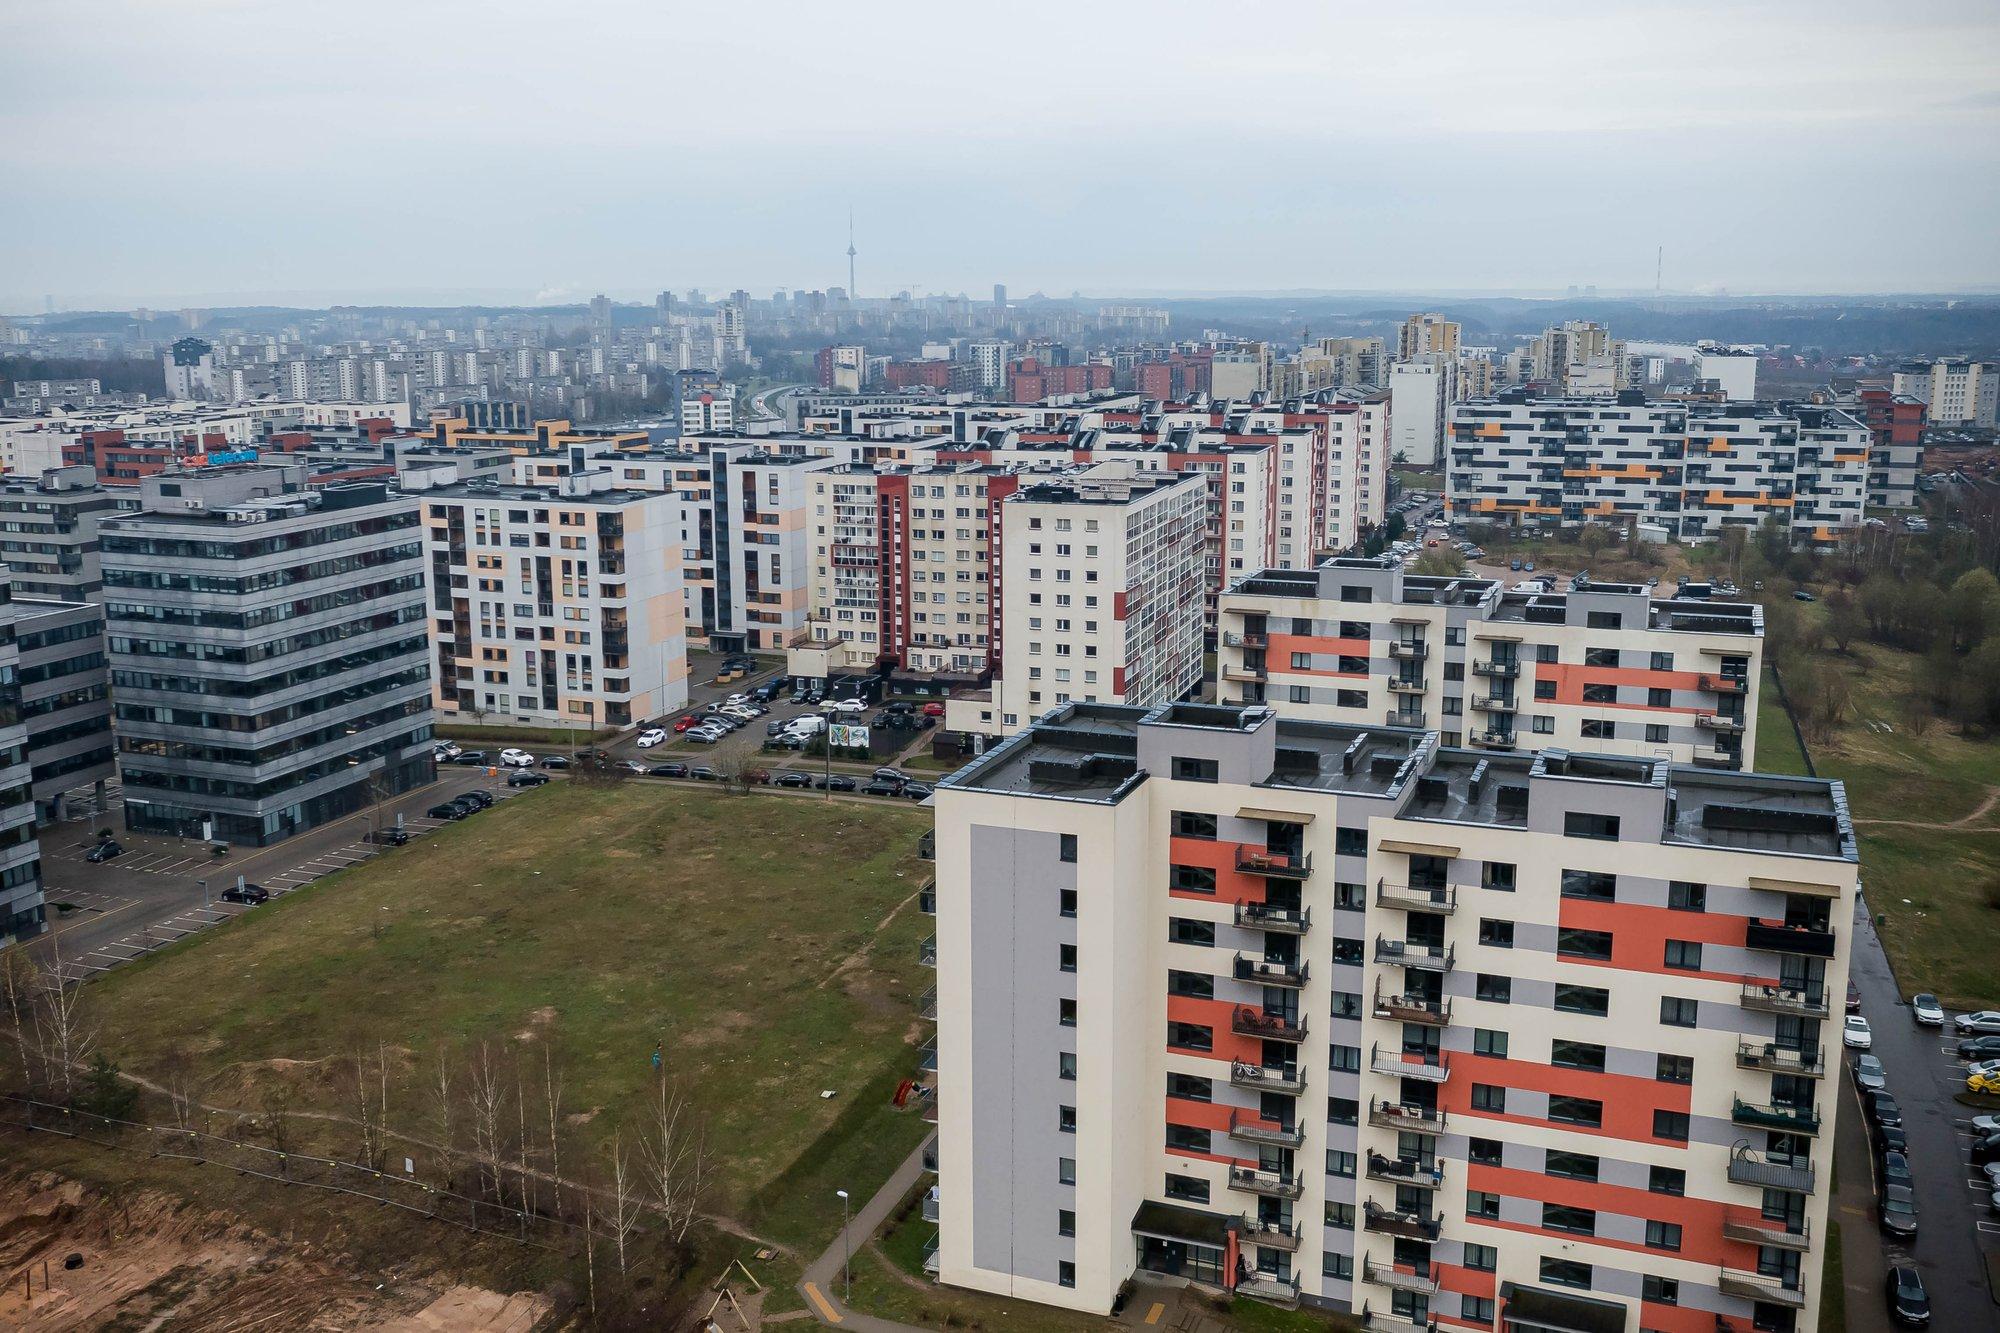 В некоторых городах Литвы подорожают бизнес-удостоверения на аренду жилья